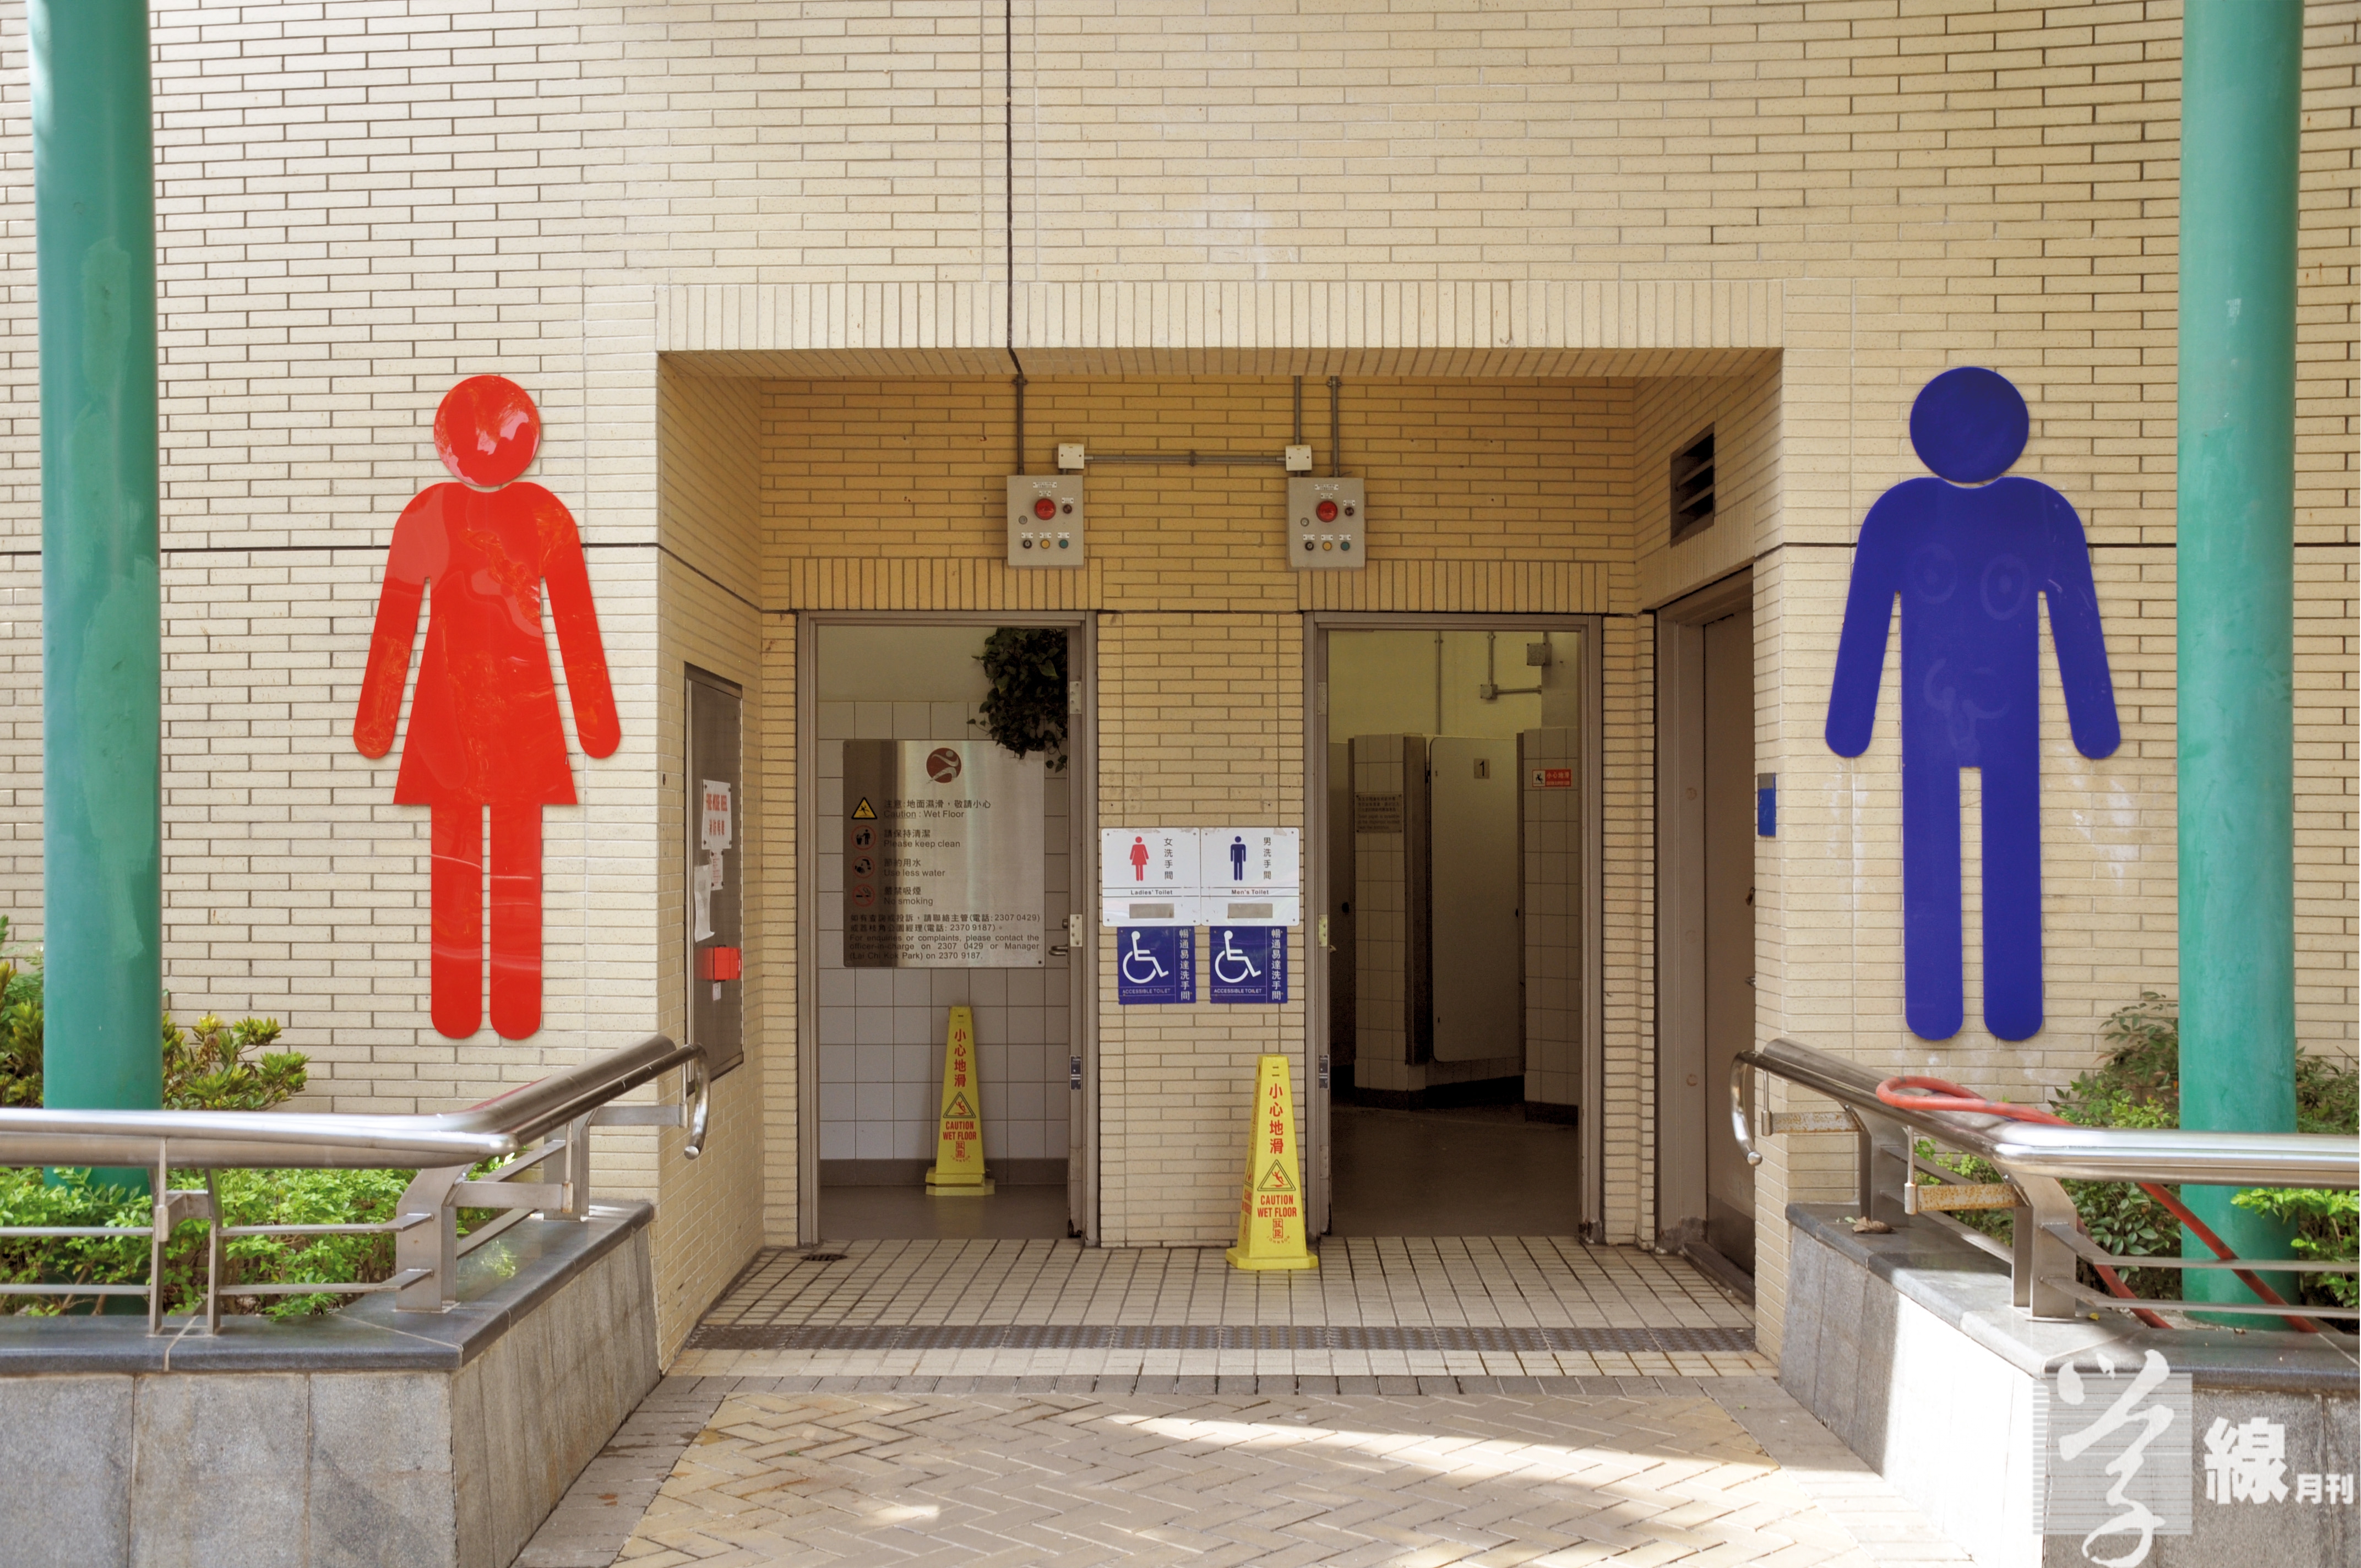 125_transgender_toilet